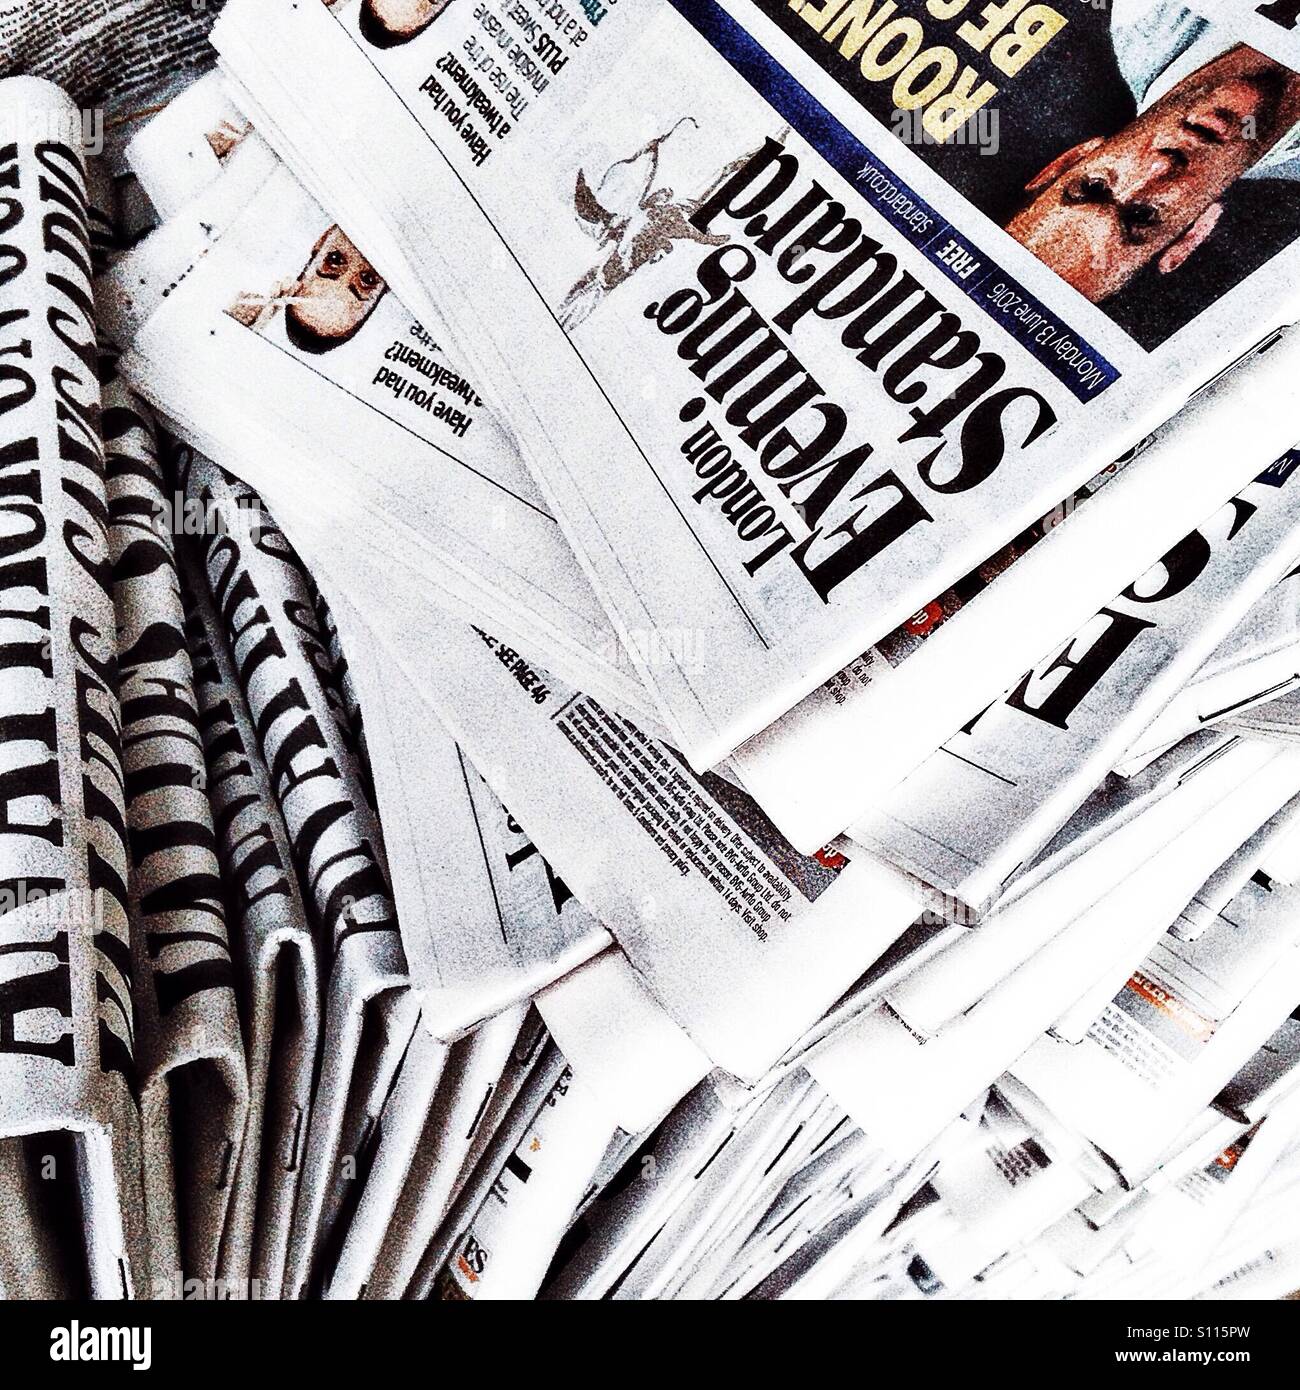 Stapel von Evening Standard Papieren in London Stockfoto